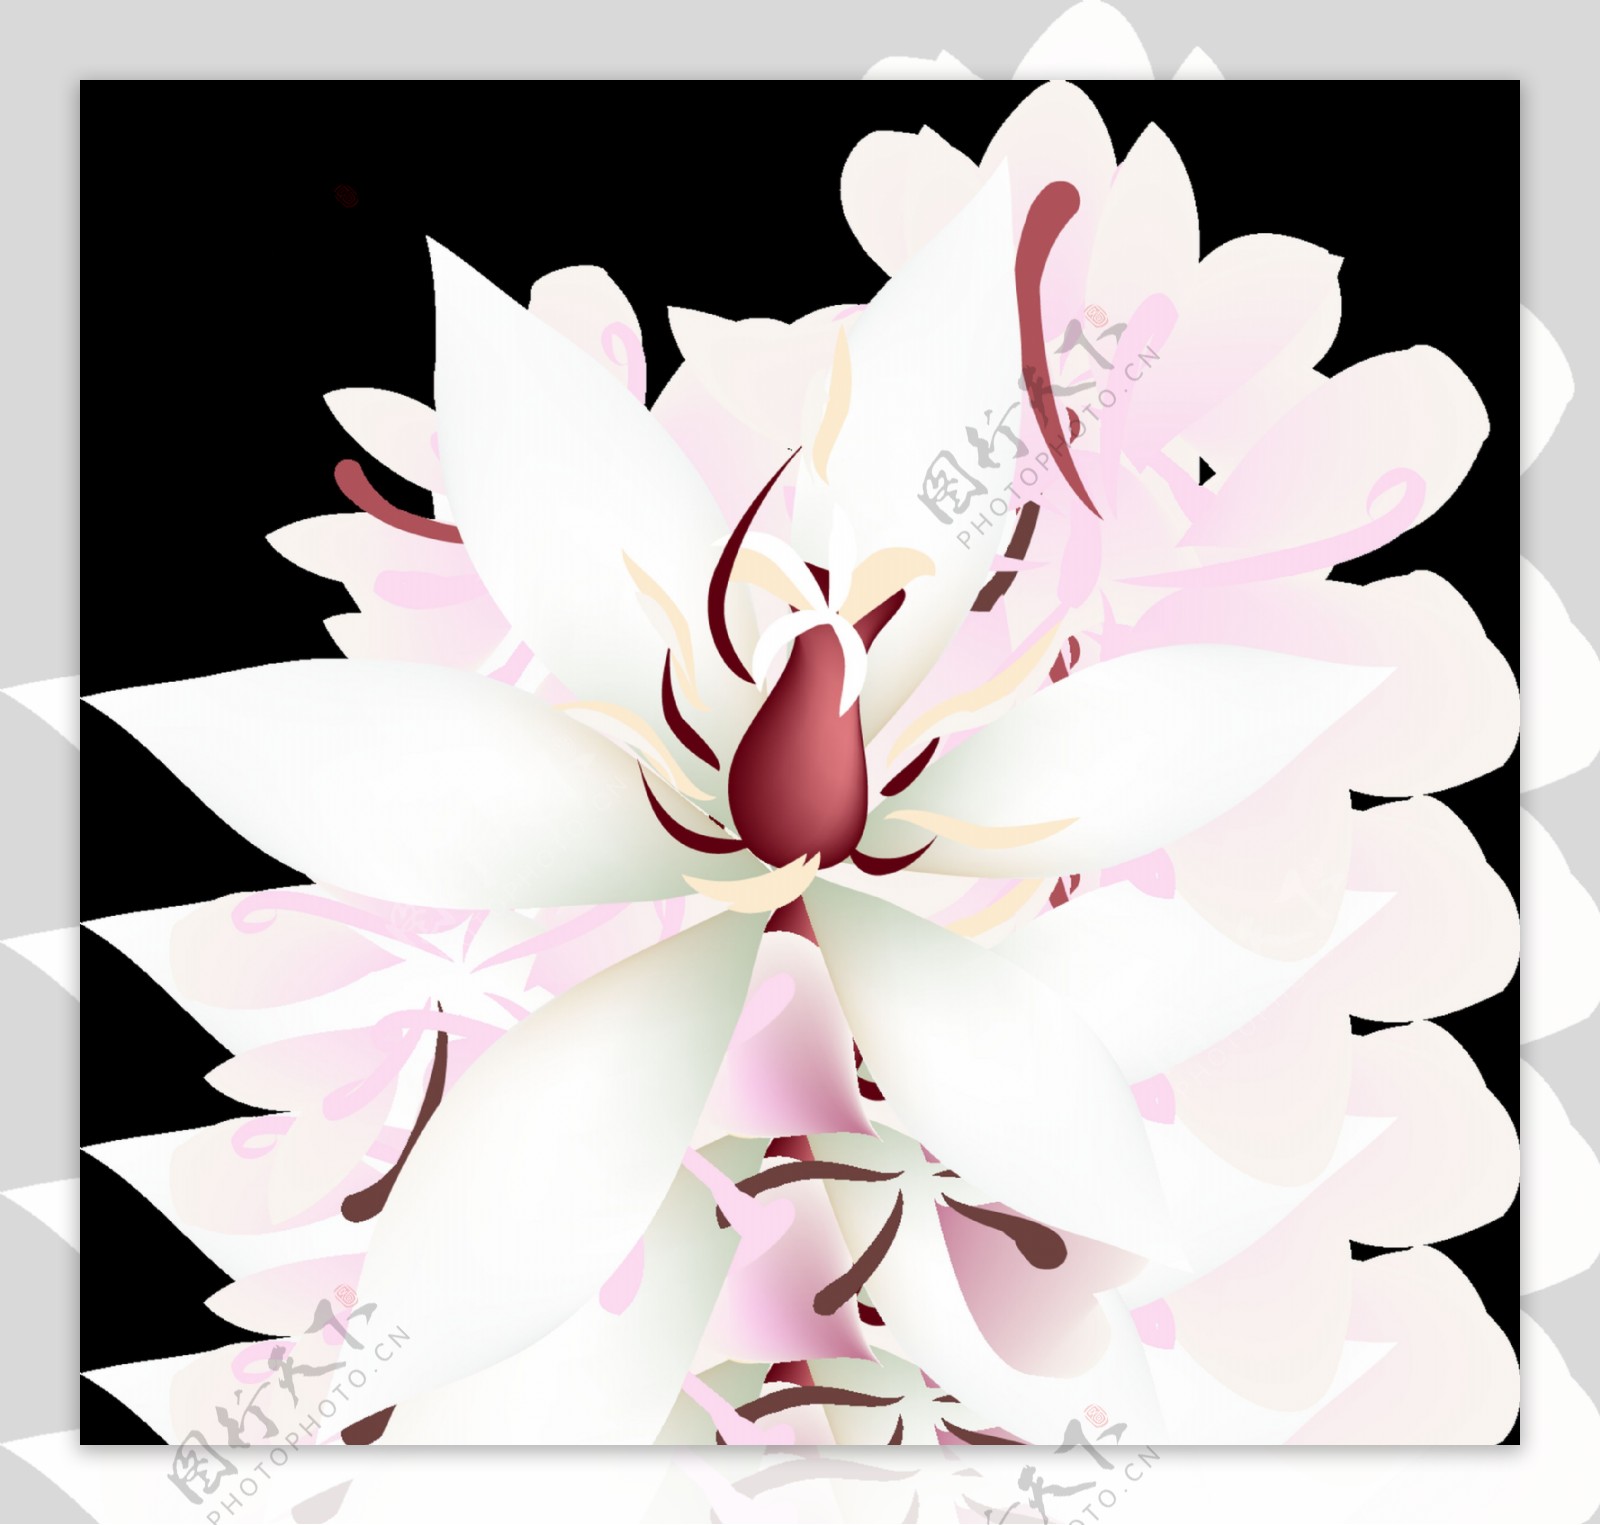 粉白花瓣透明装饰素材